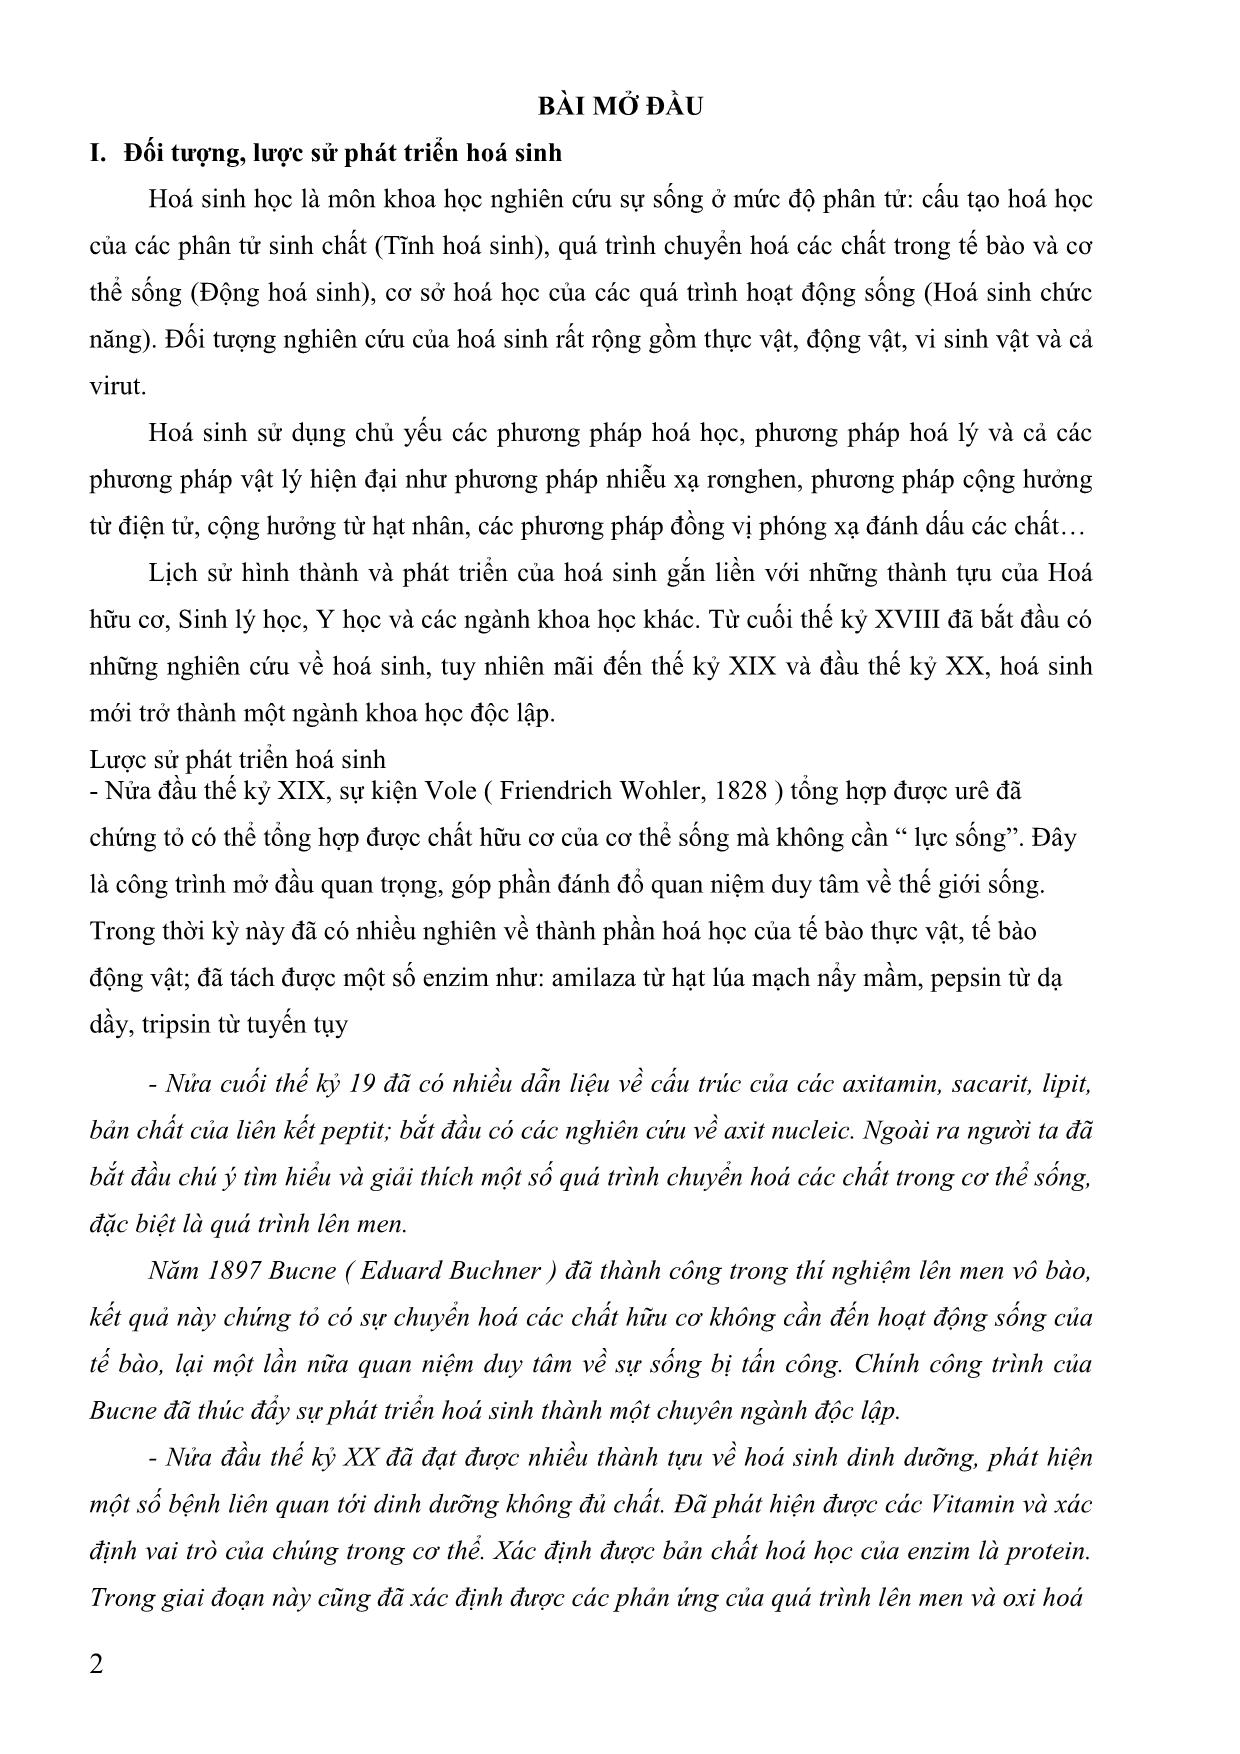 Giáo trình Hóa sinh (Phần 1) trang 2